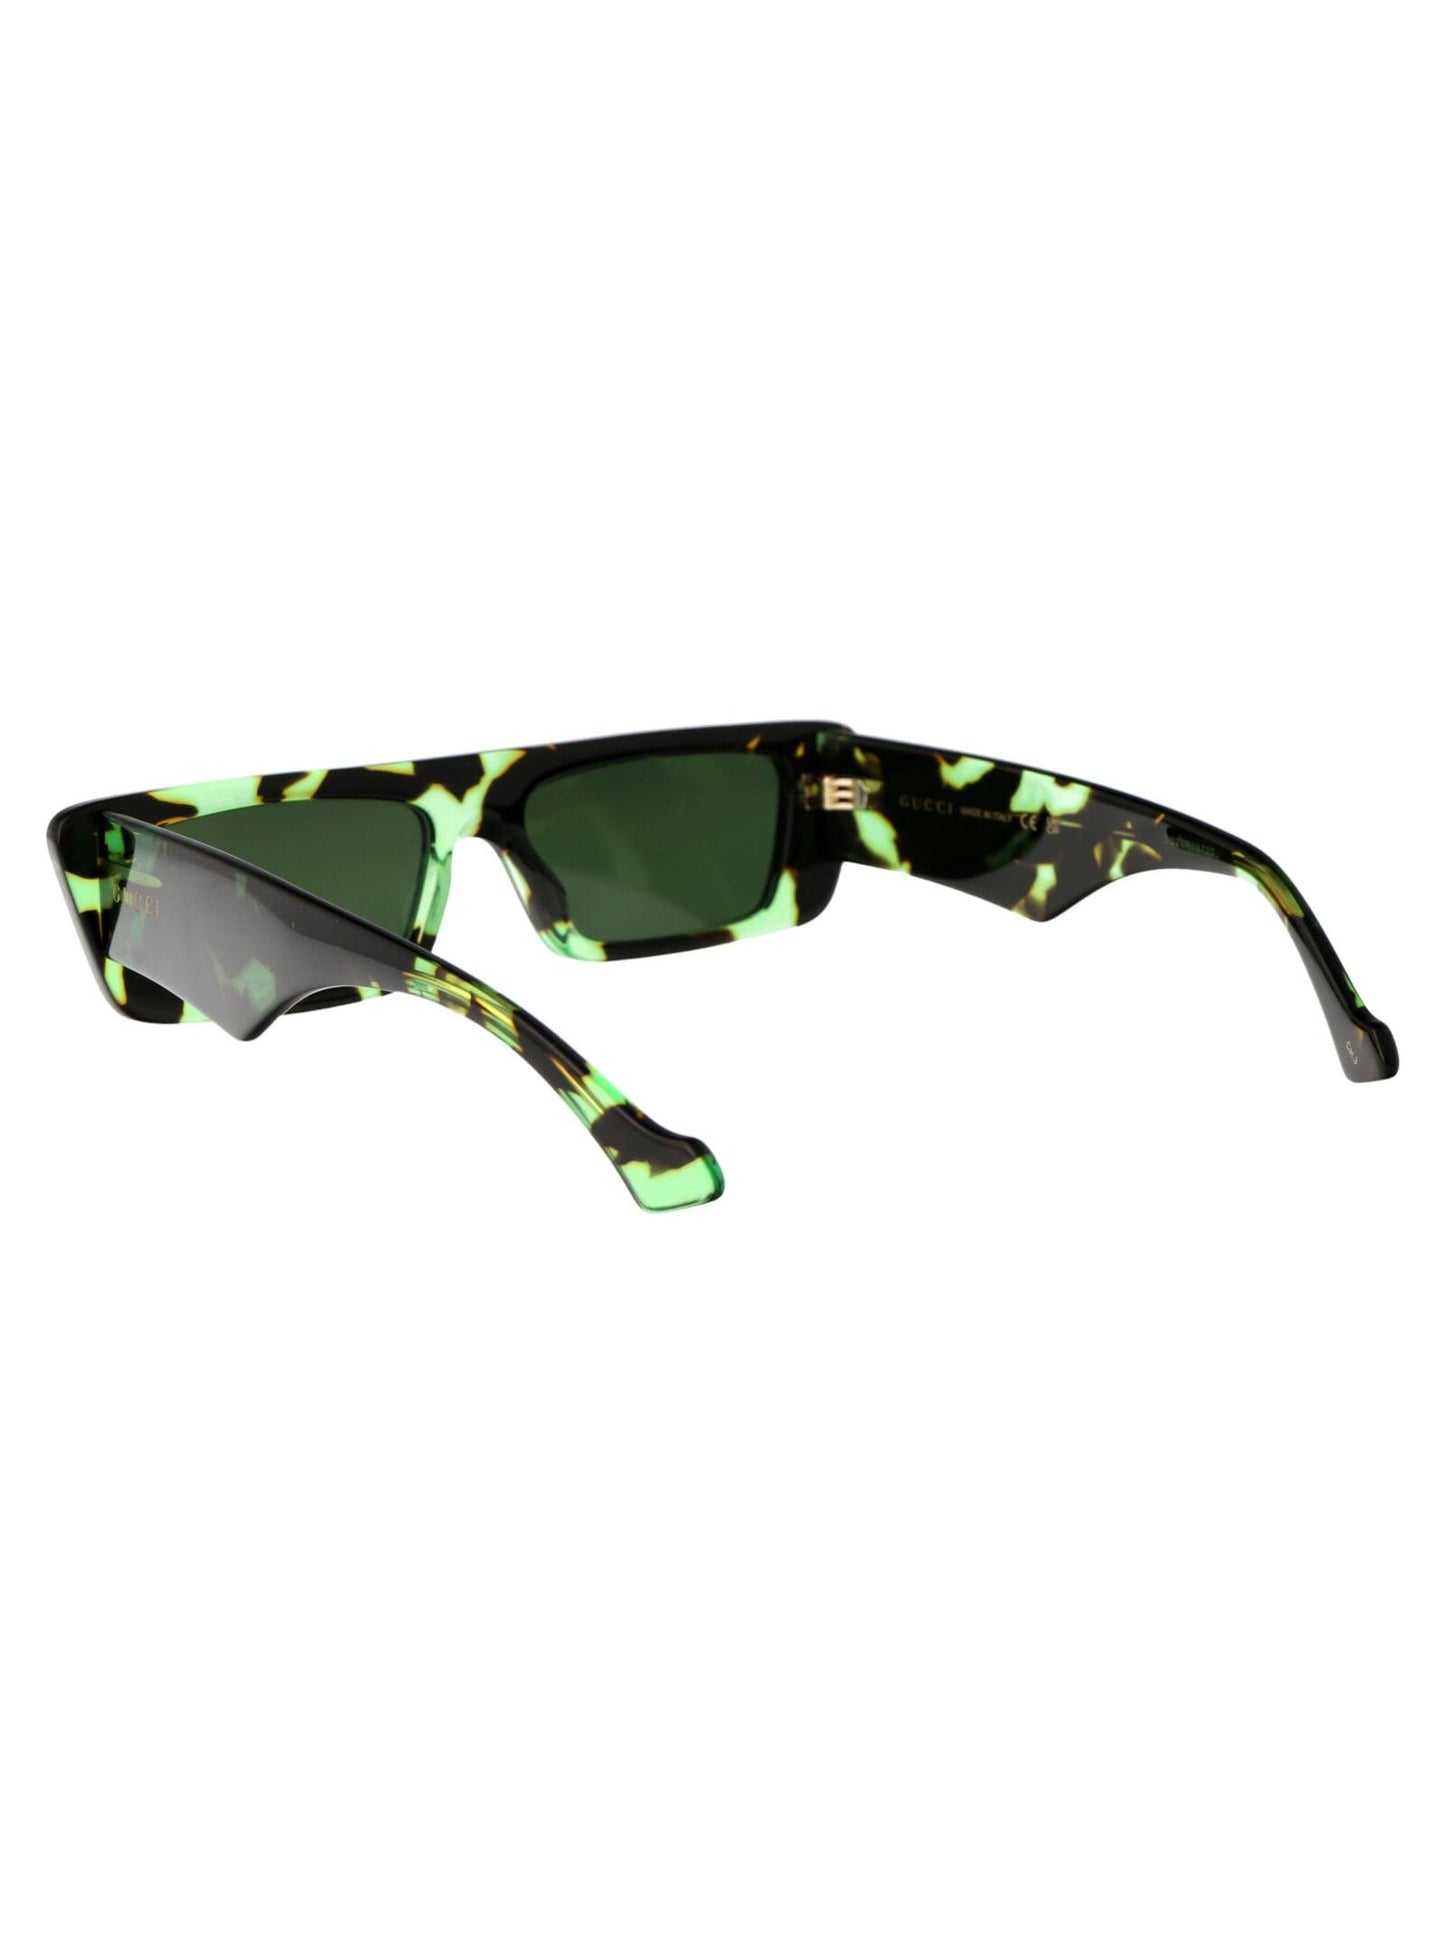 Gucci GG1331S-008 54mm New Sunglasses